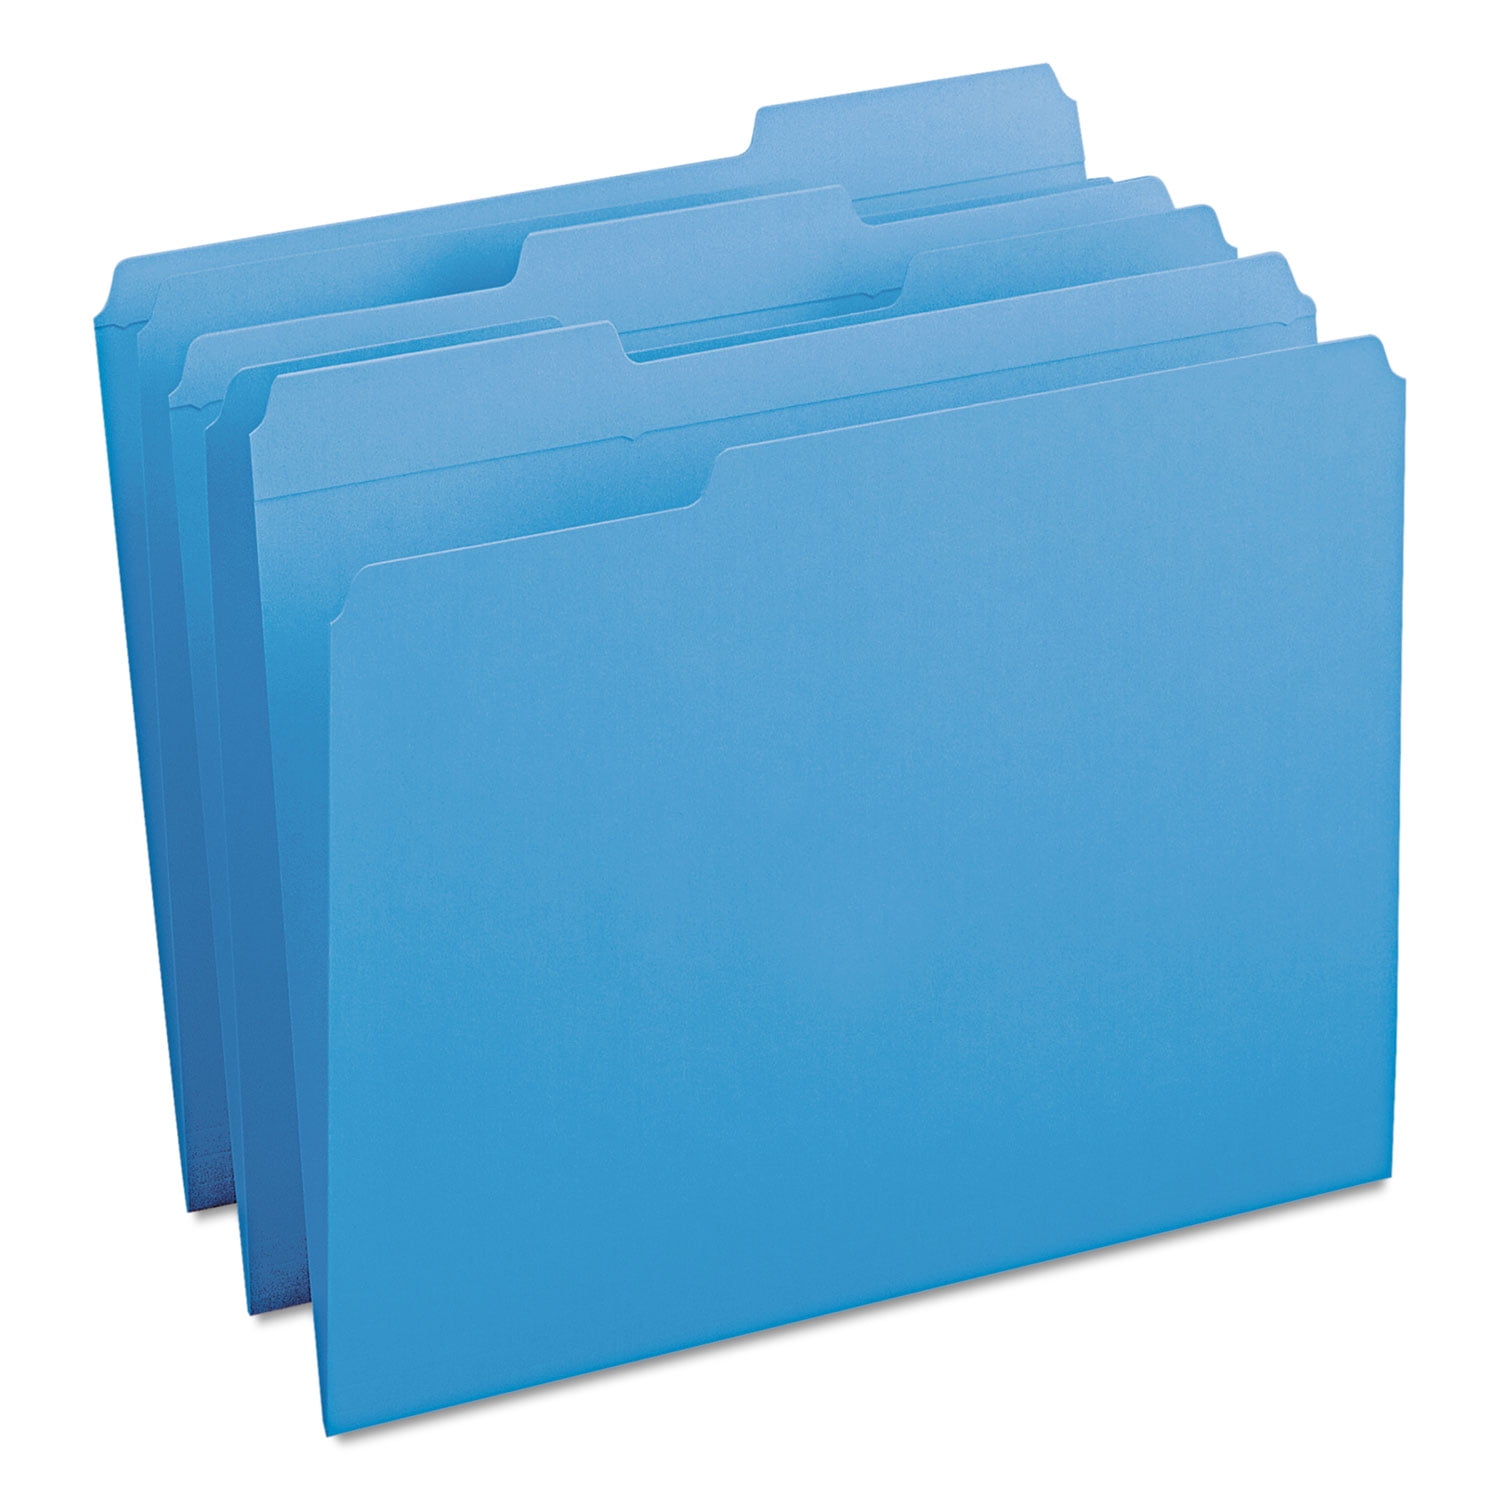 Smead File Folders 1/3 Cut Reinforced Top Tab Letter Blue 100/Box 12034 